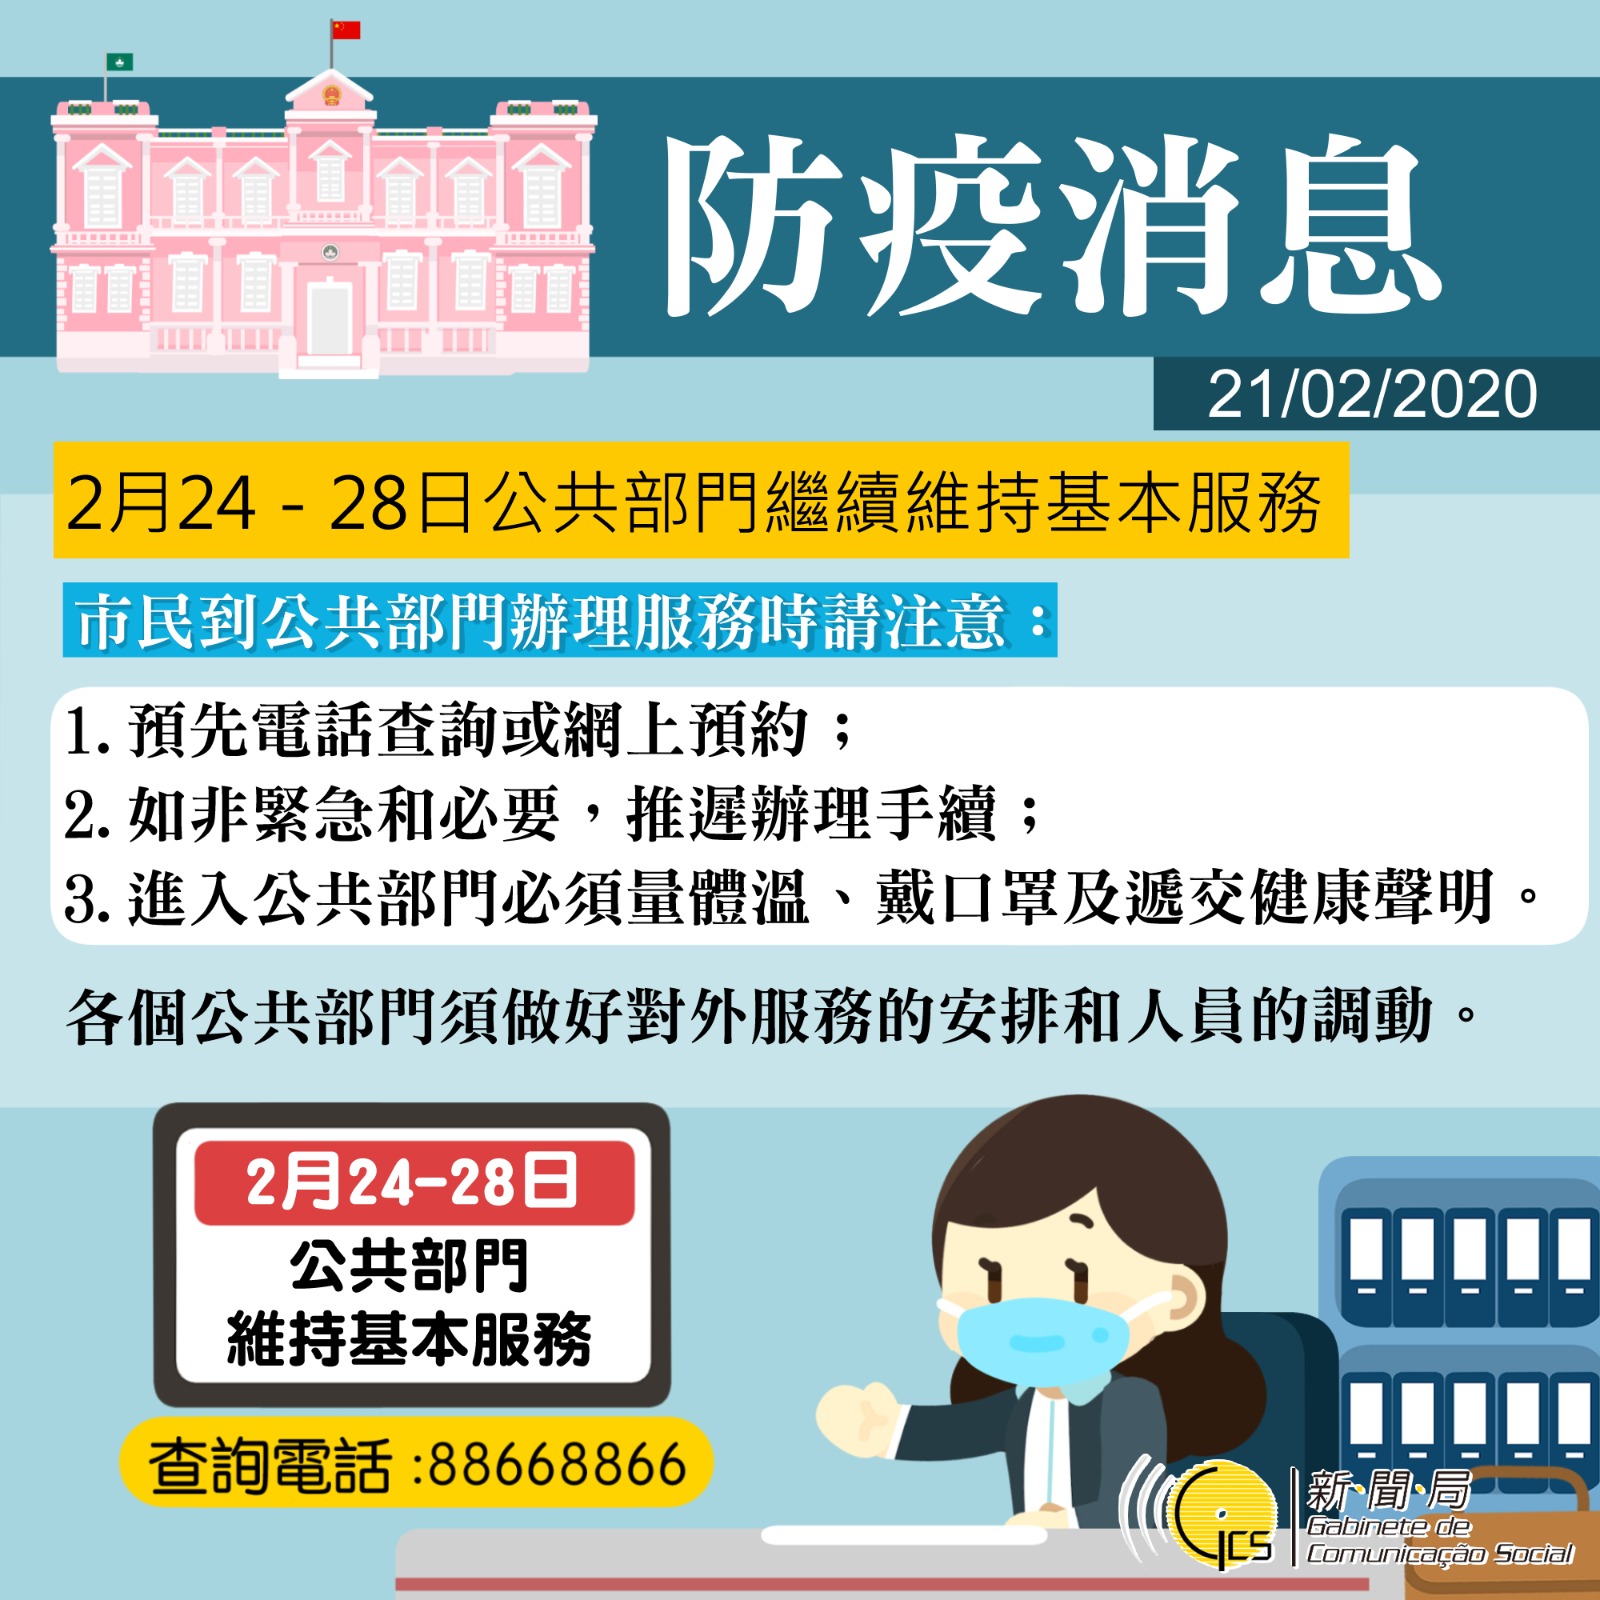 【圖文包】2月24 - 28日公共部門繼續維持基本服務